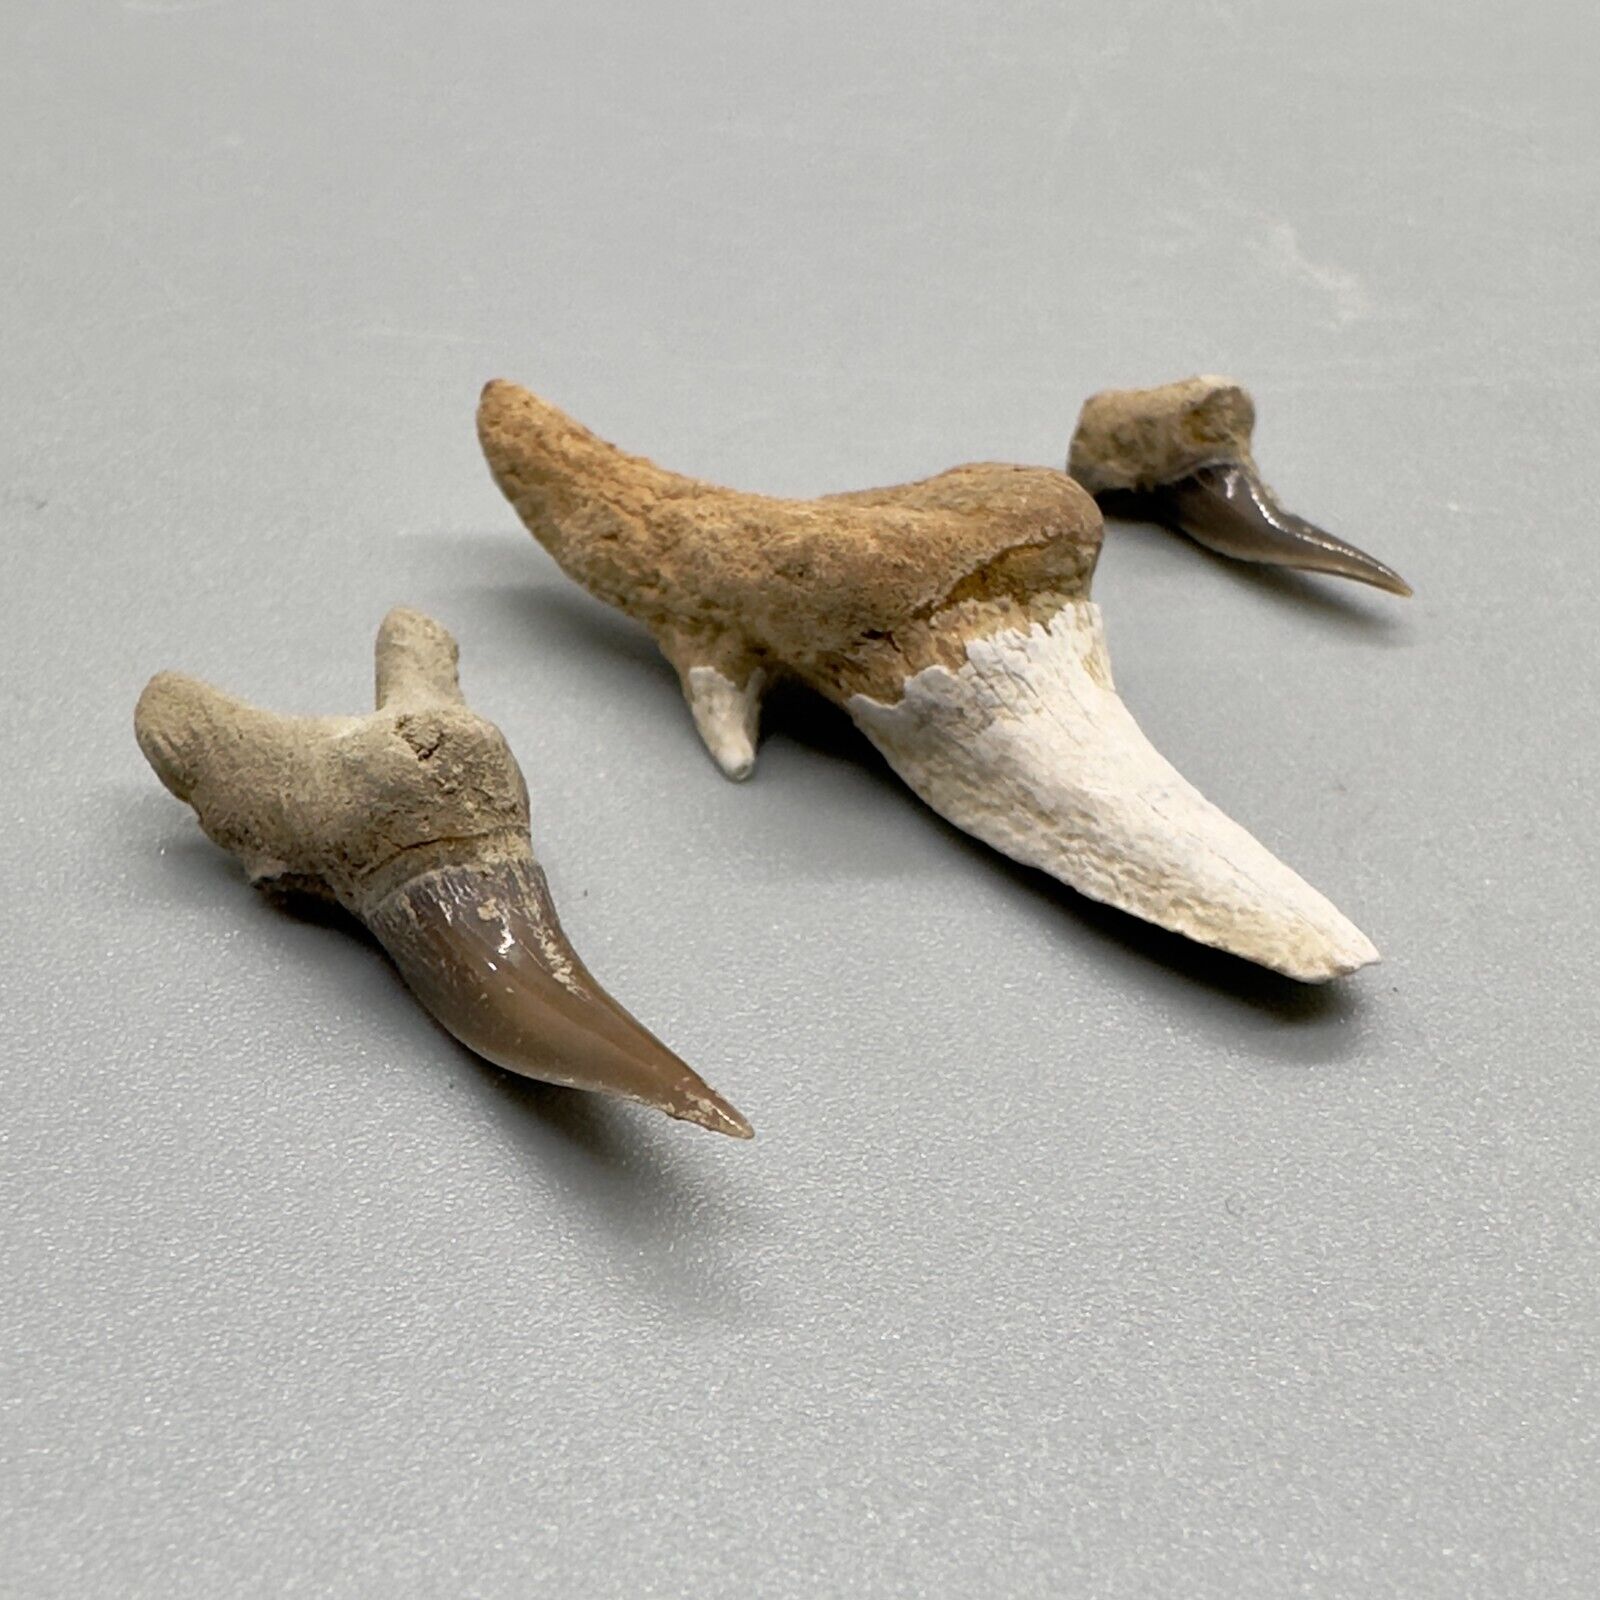 3 Uncommon Location Fossil LEPTOSTYRAX Shark Teeth - Little Glasses, Oklahoma